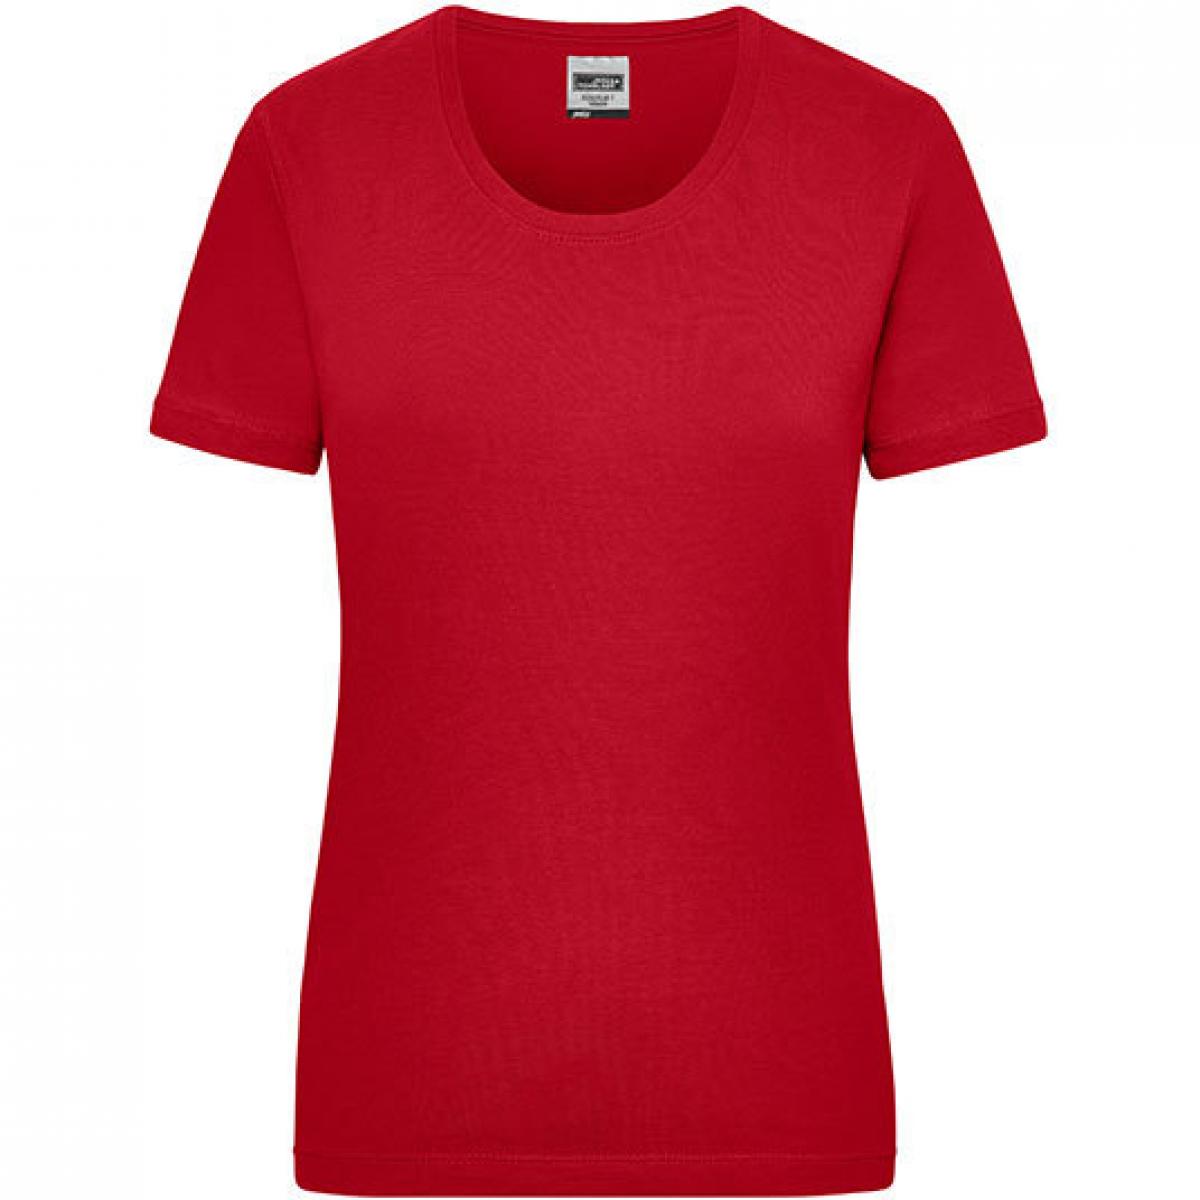 Hersteller: James+Nicholson Herstellernummer: JN 802 Artikelbezeichnung: Workwear-T Women Damen T-Shirt Farbe: Red